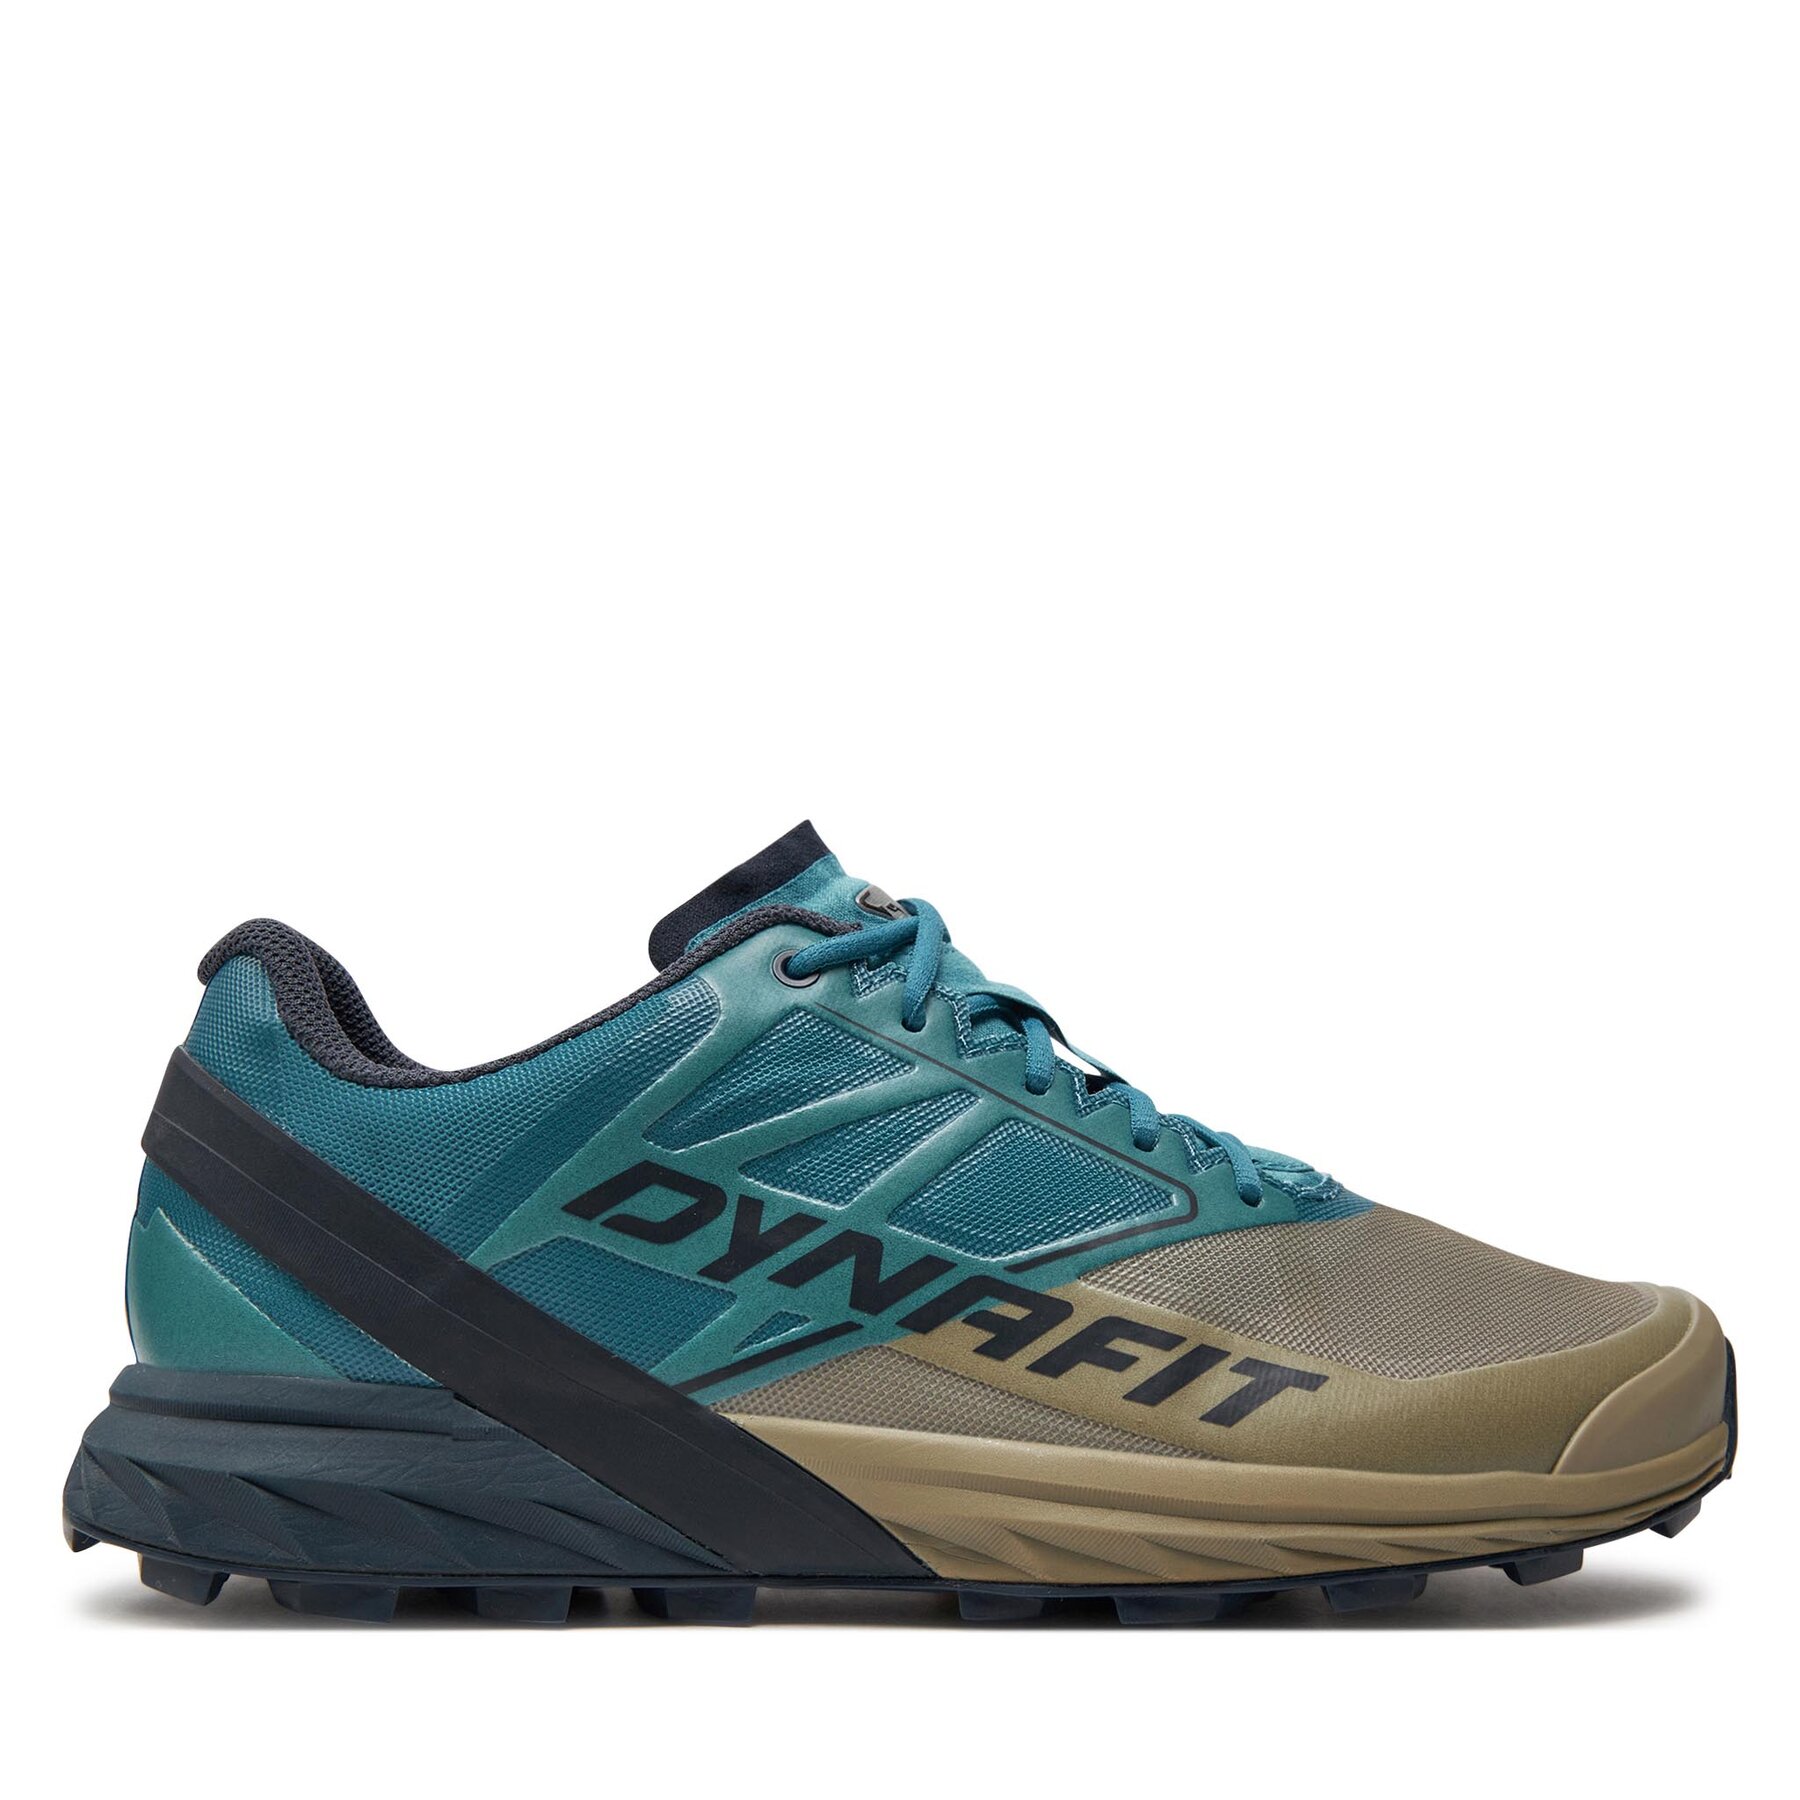 Chaussures de running Dynafit Alpine 5285 Kaki